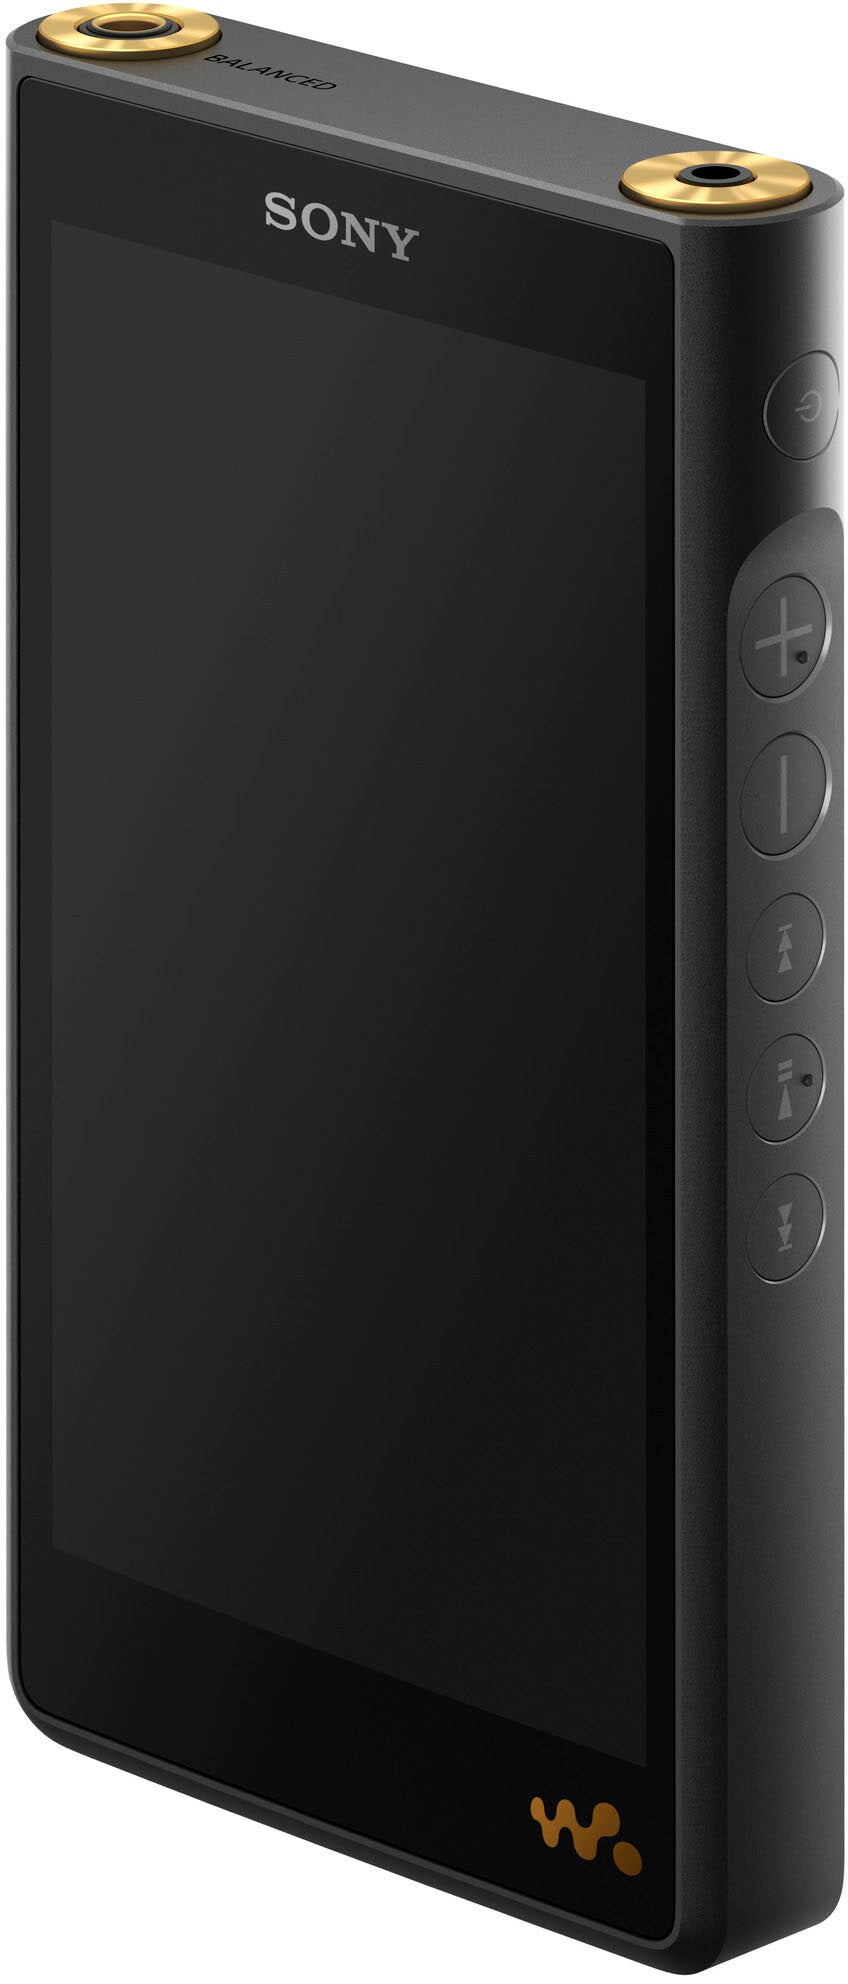 Sony - NWWM1AM2 Walkman Digital Music Player - Black_9